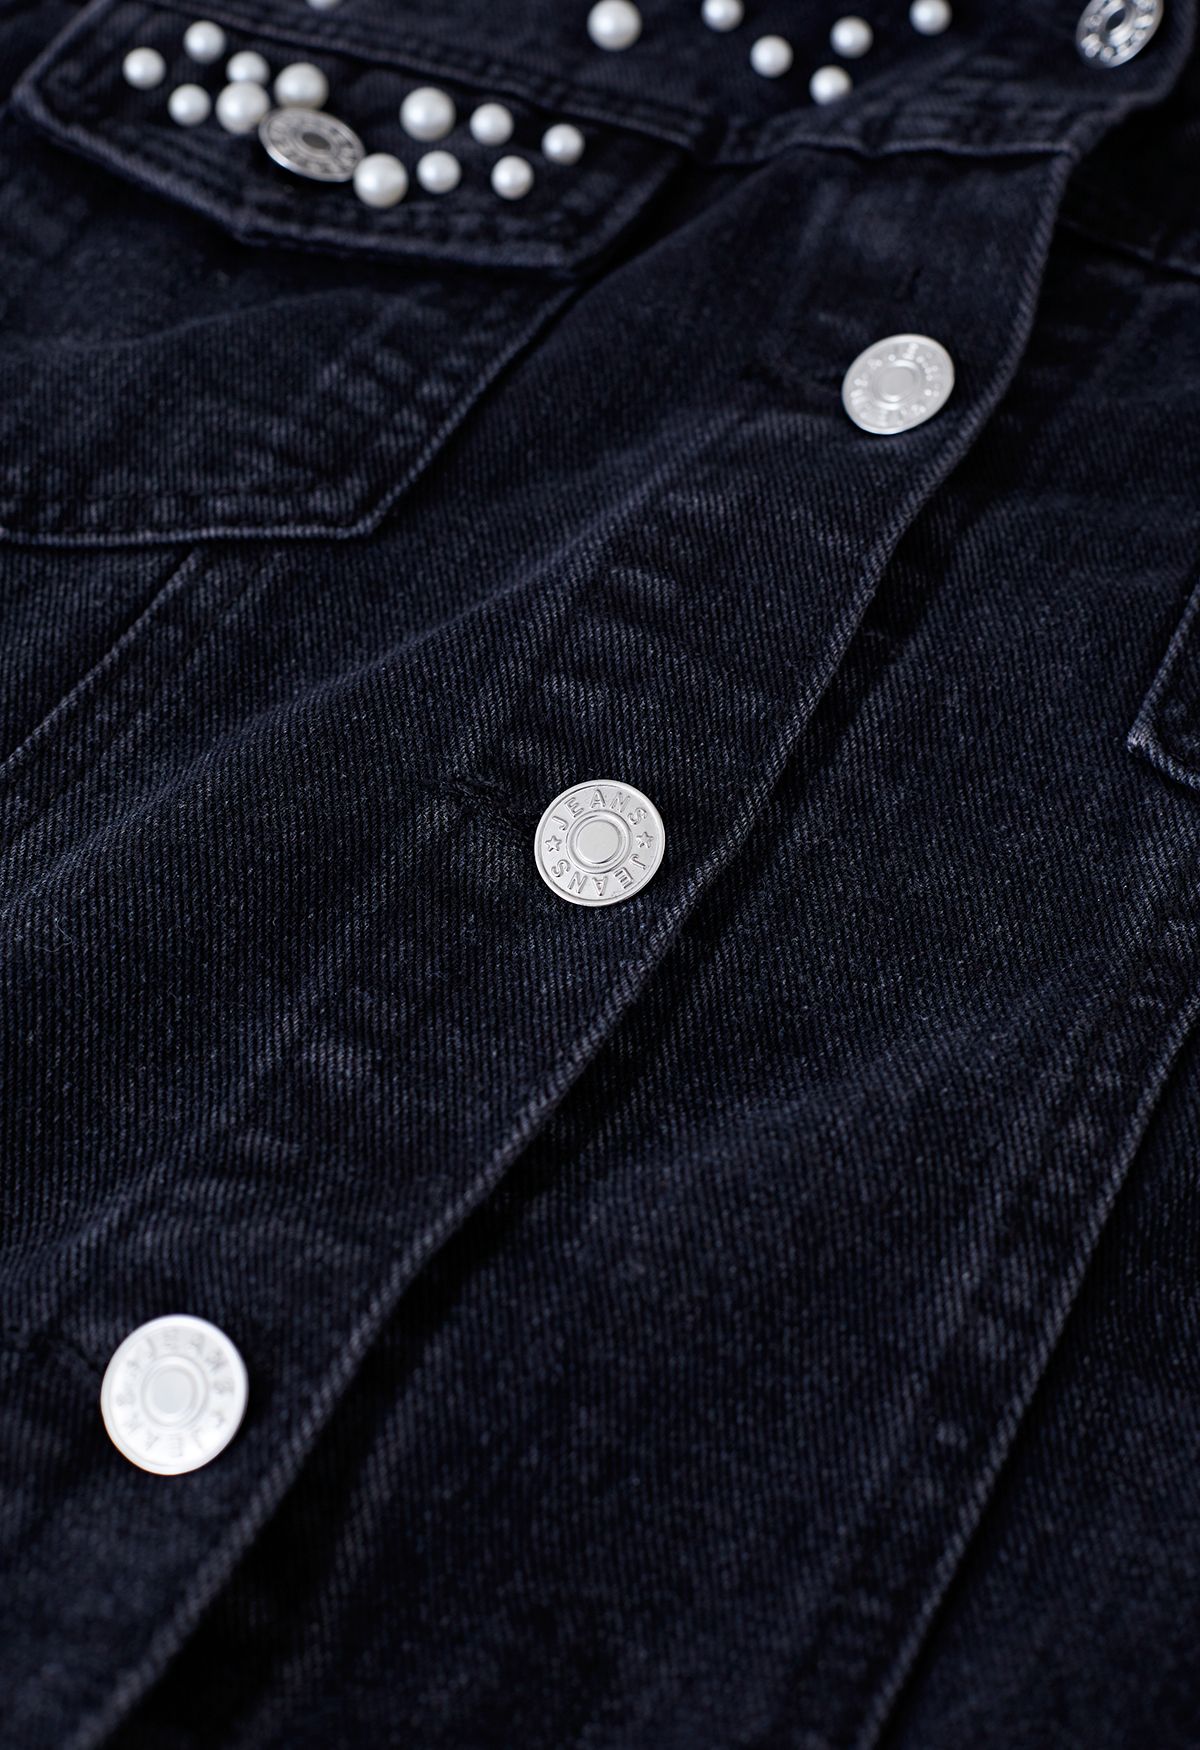 Pearl Embellished Flap Pocket Denim Jacket in Black